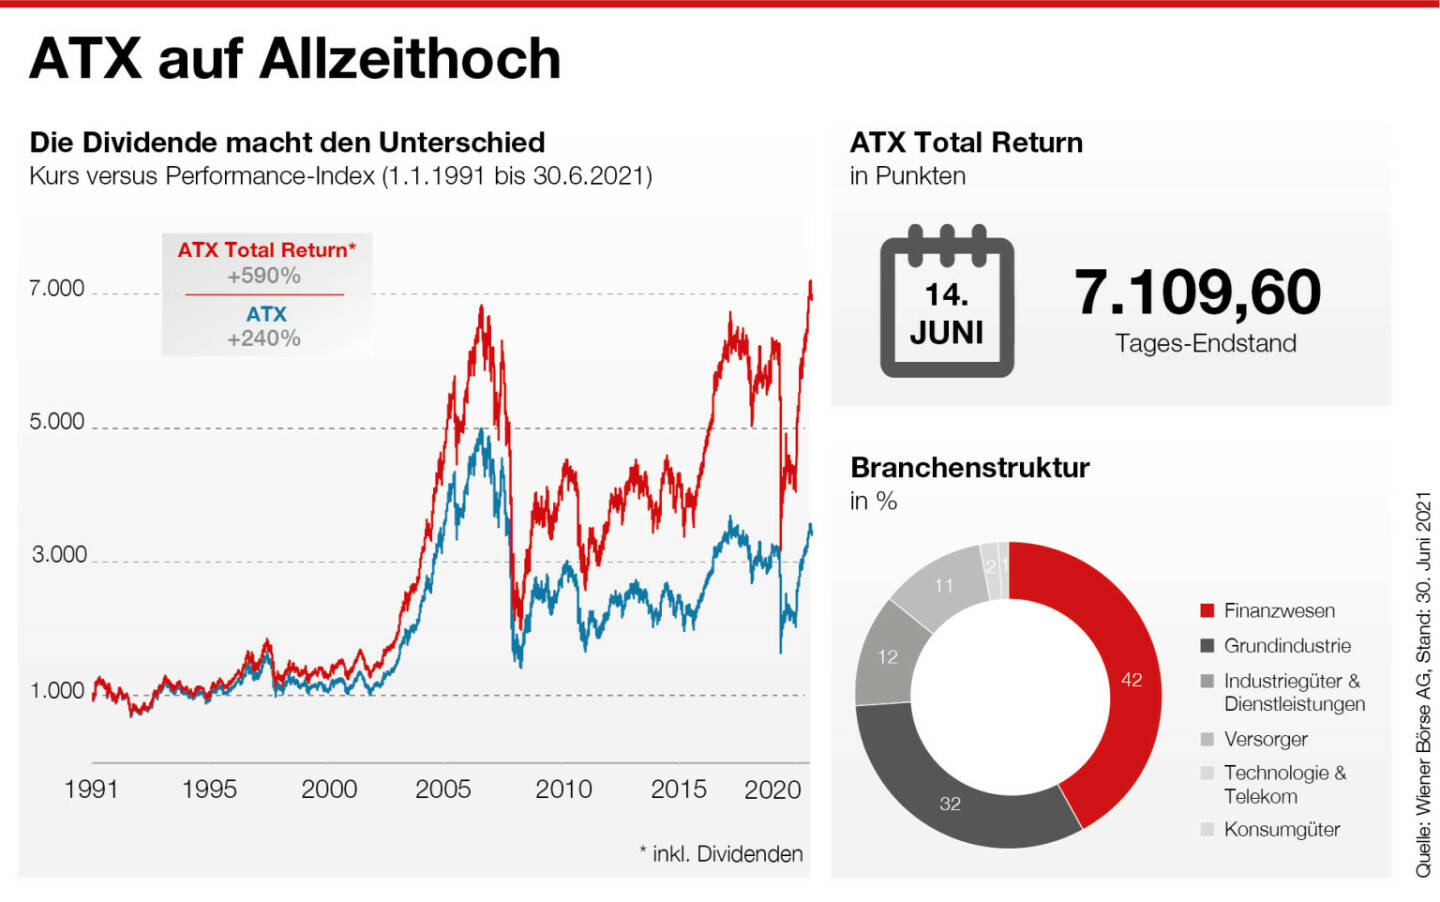 ATX-Grafik, Allzeithoch, Credit: Wiener Börse